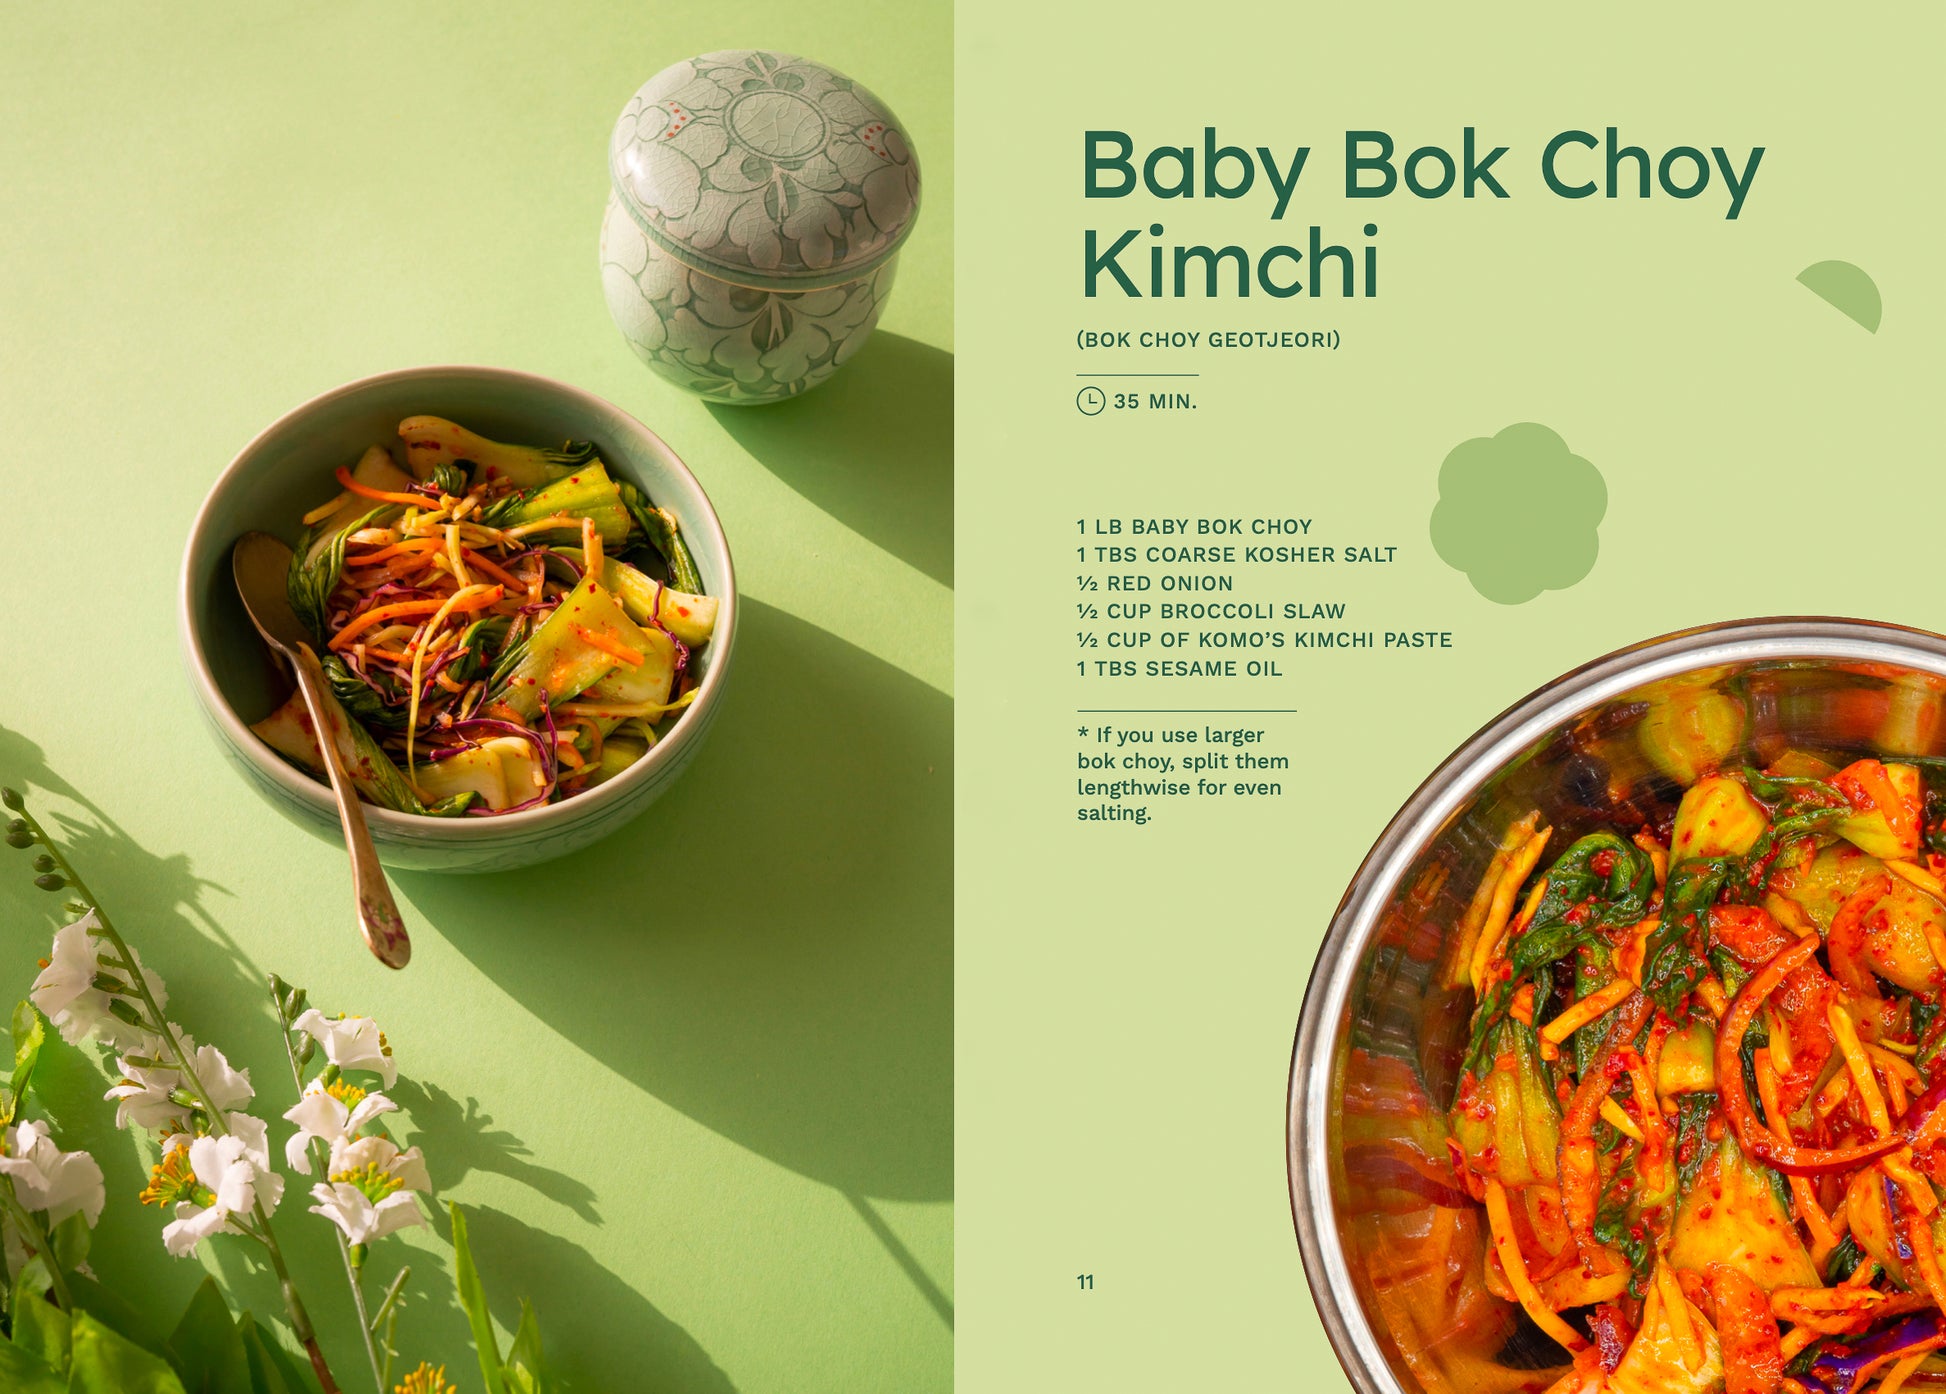 Baby Bok Choy Kimchi